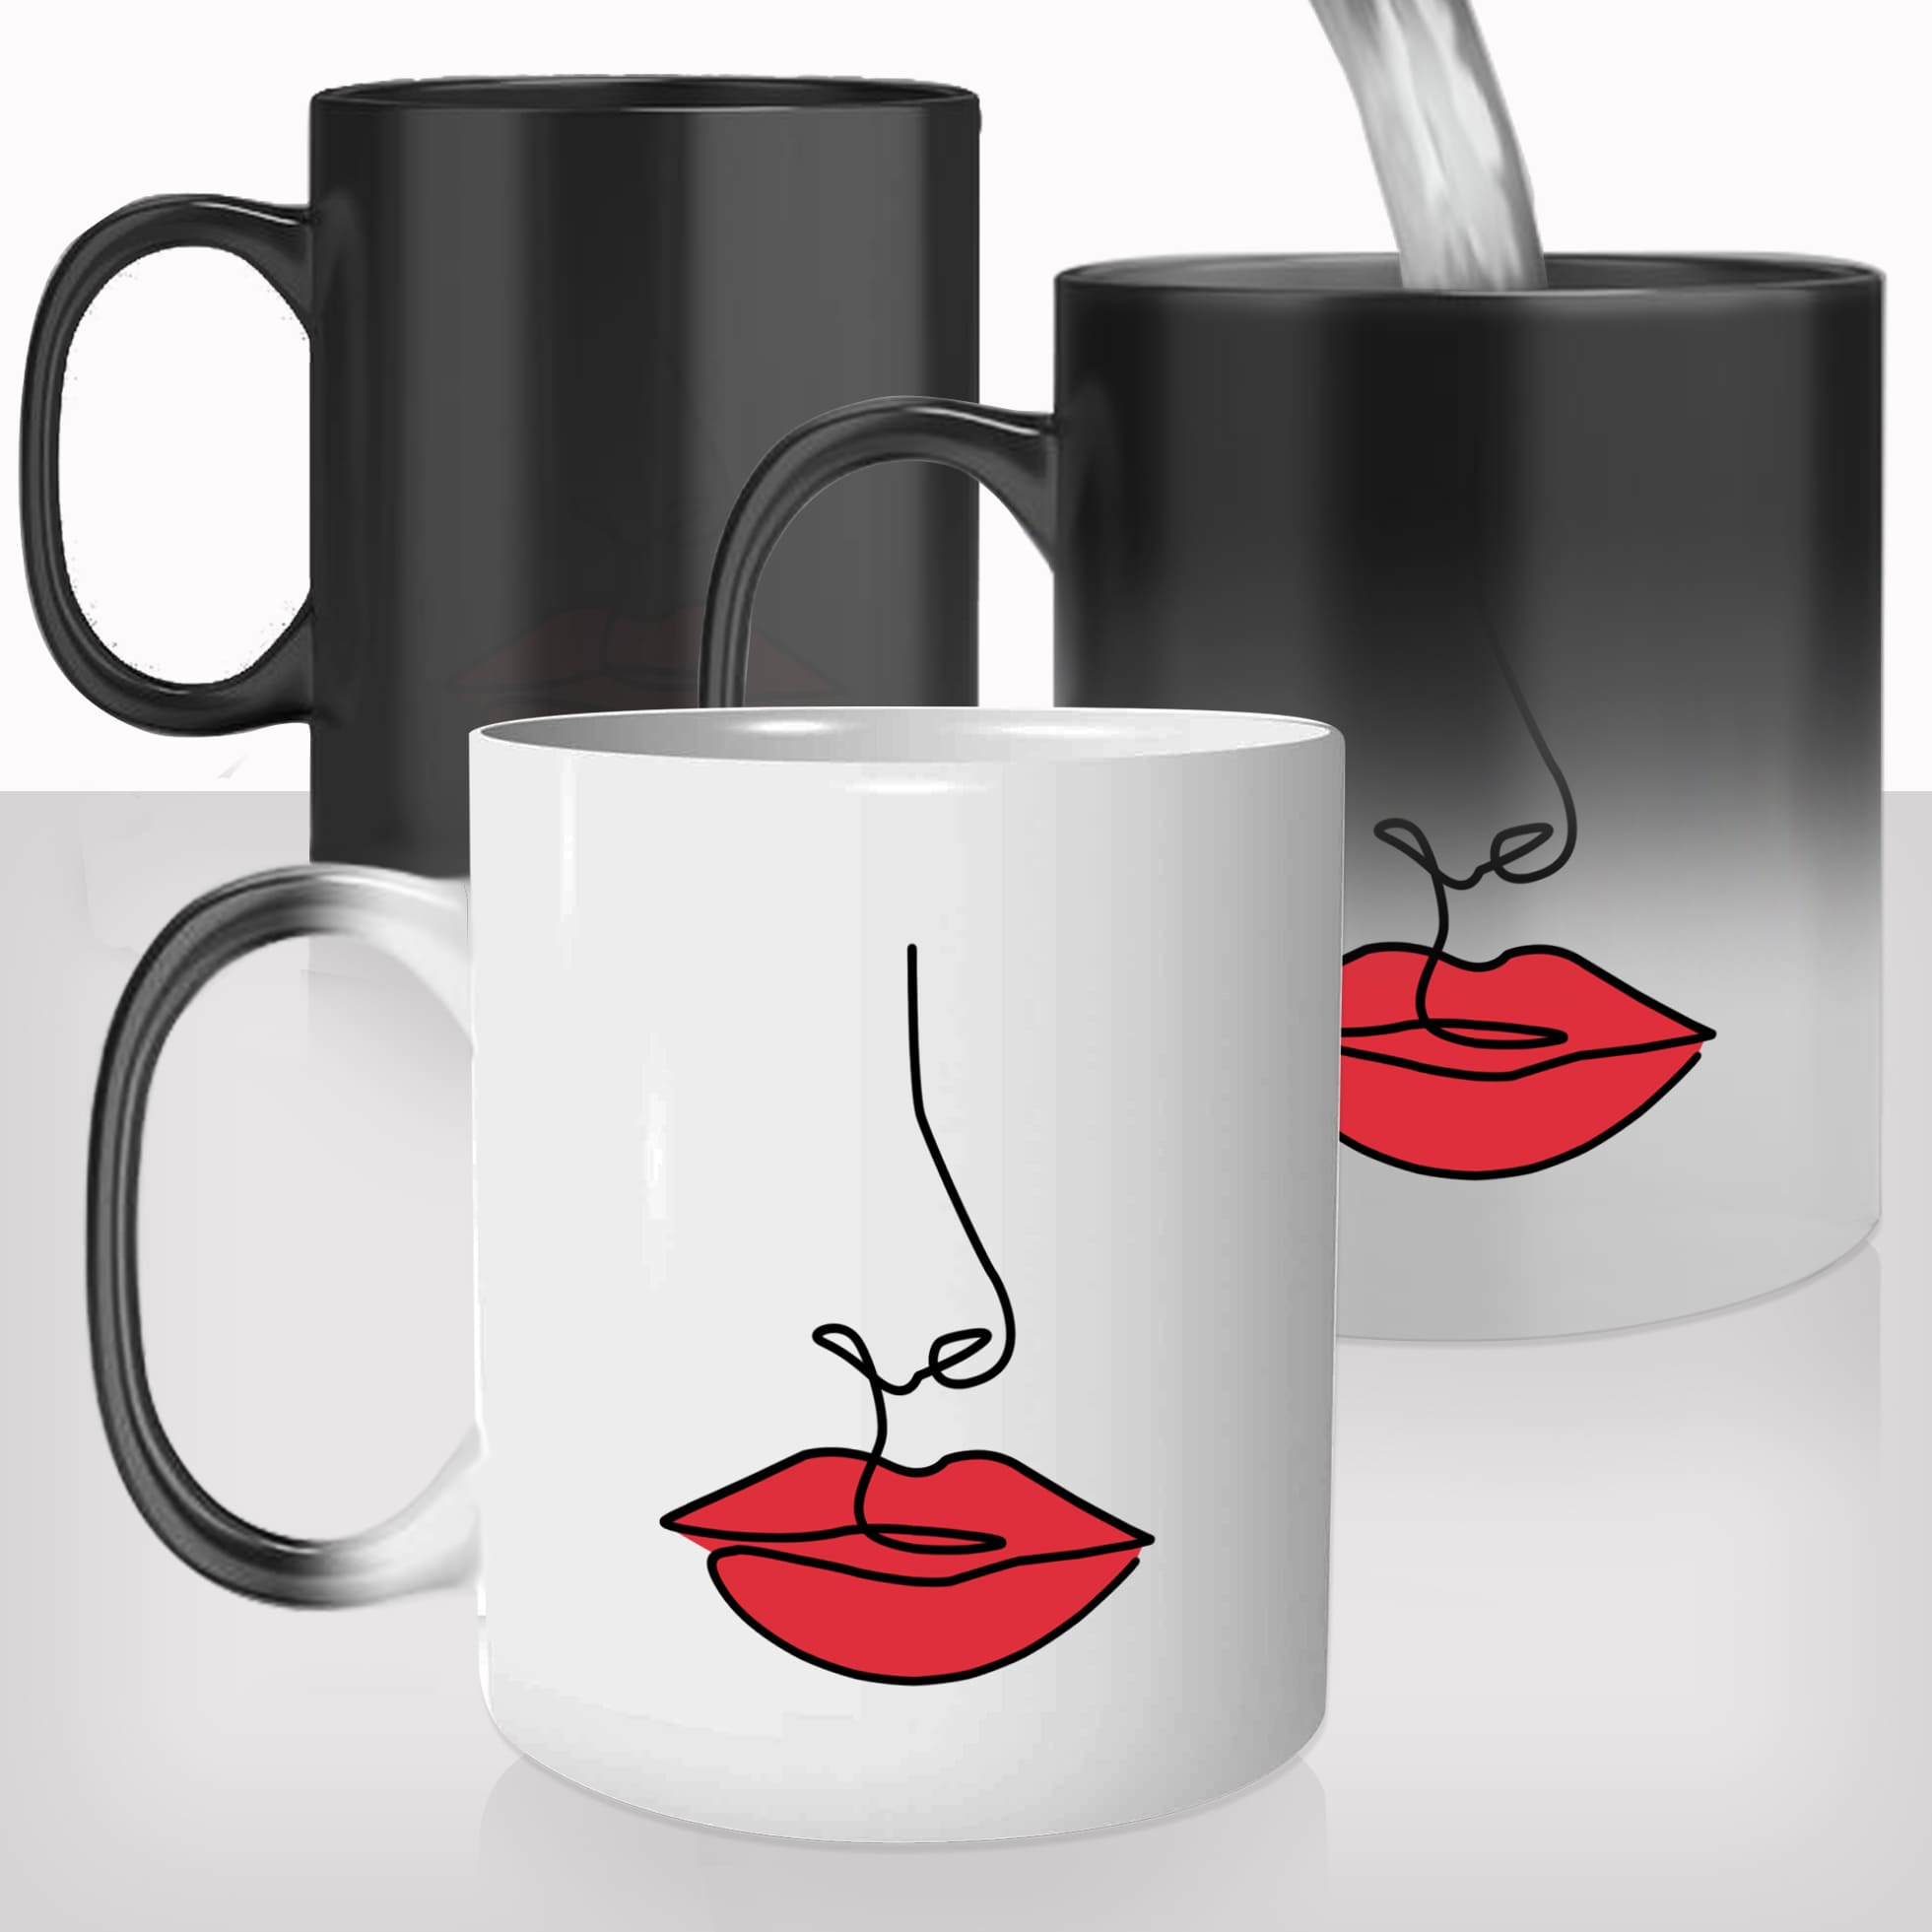 mug-magique-tasse-magic-thermo-reactif-amour-femme-bouche-rouge-a-levre-sexy-maquillage-personnalisable-cadeau-original-fun